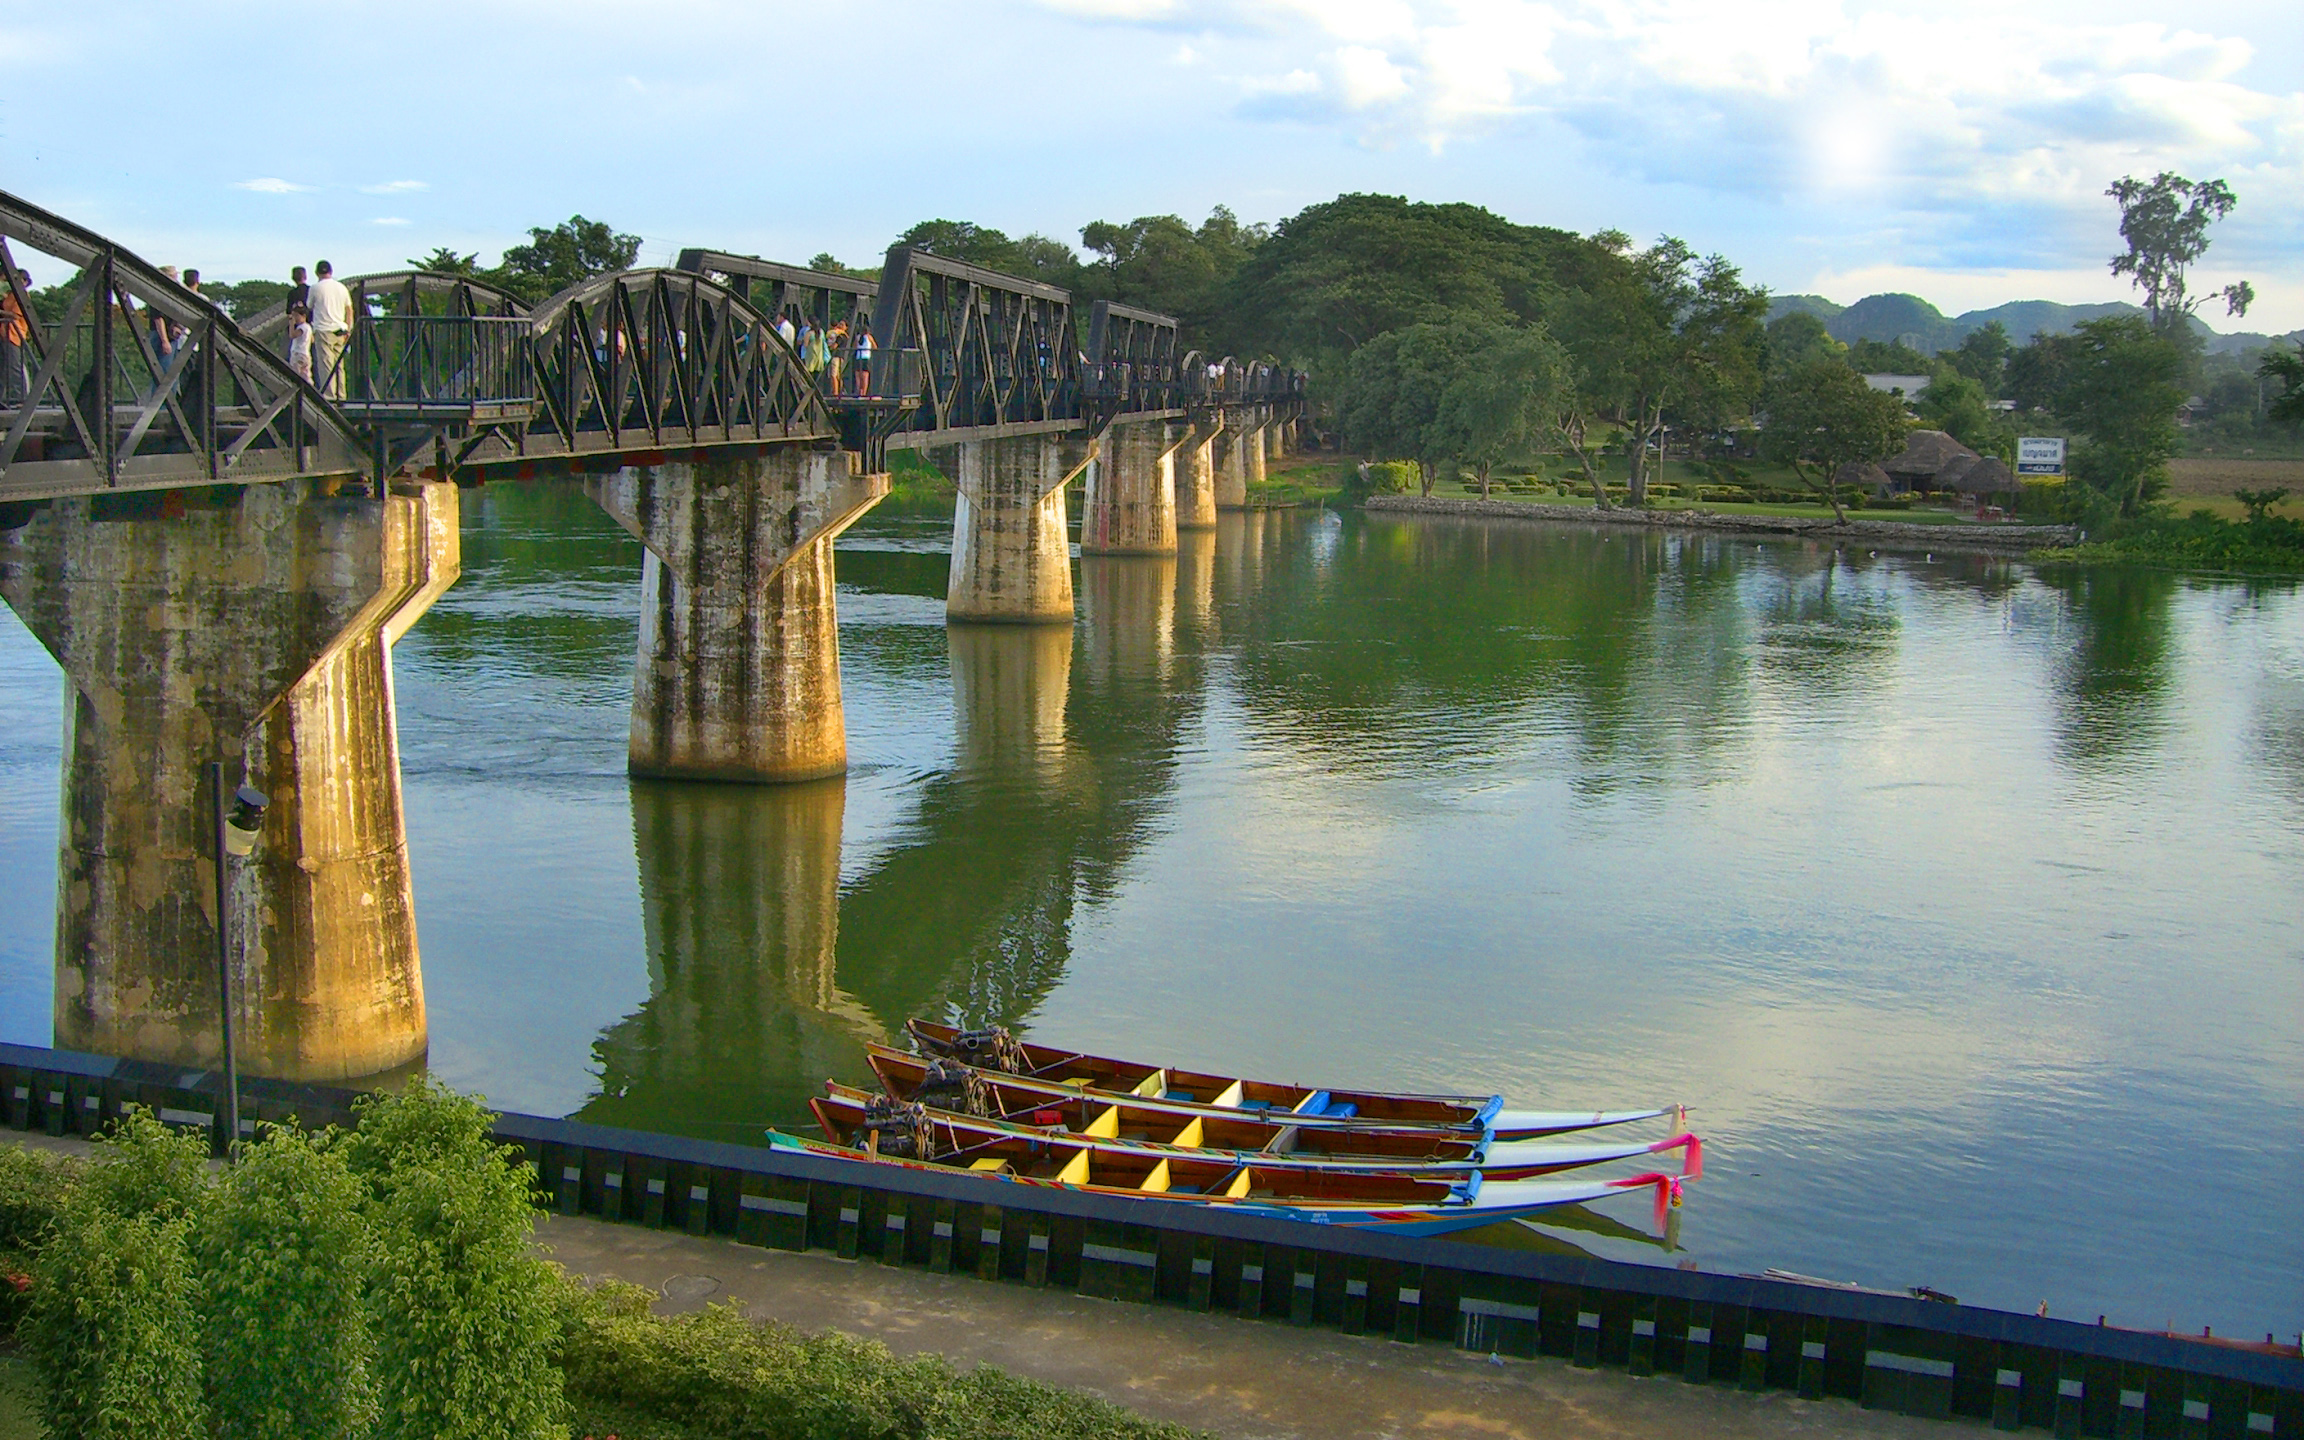 River_Mae_Klong_bridge,_Burma_Railway.jpg